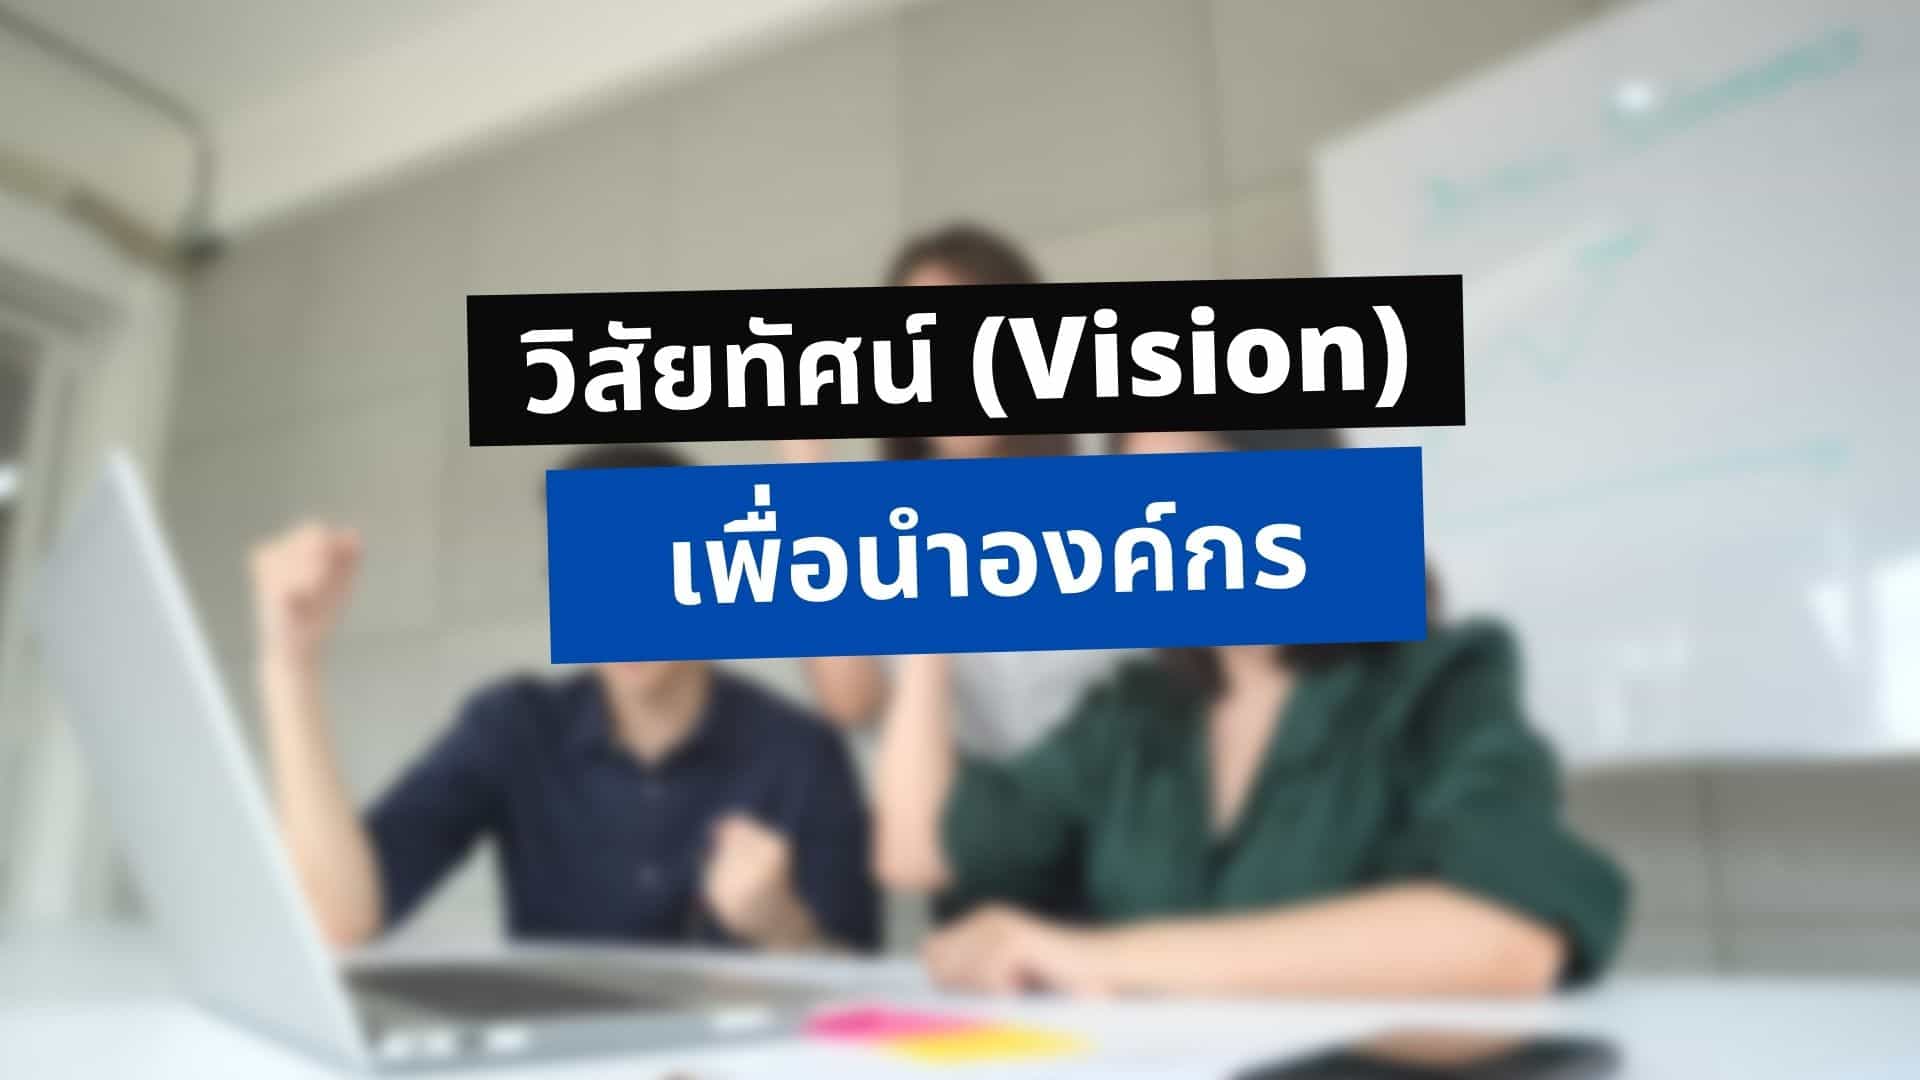 วิสัยทัศน์ (Vision) คืออะไร? แตกต่างจาก พันธกิจ (Mission) อย่างไร